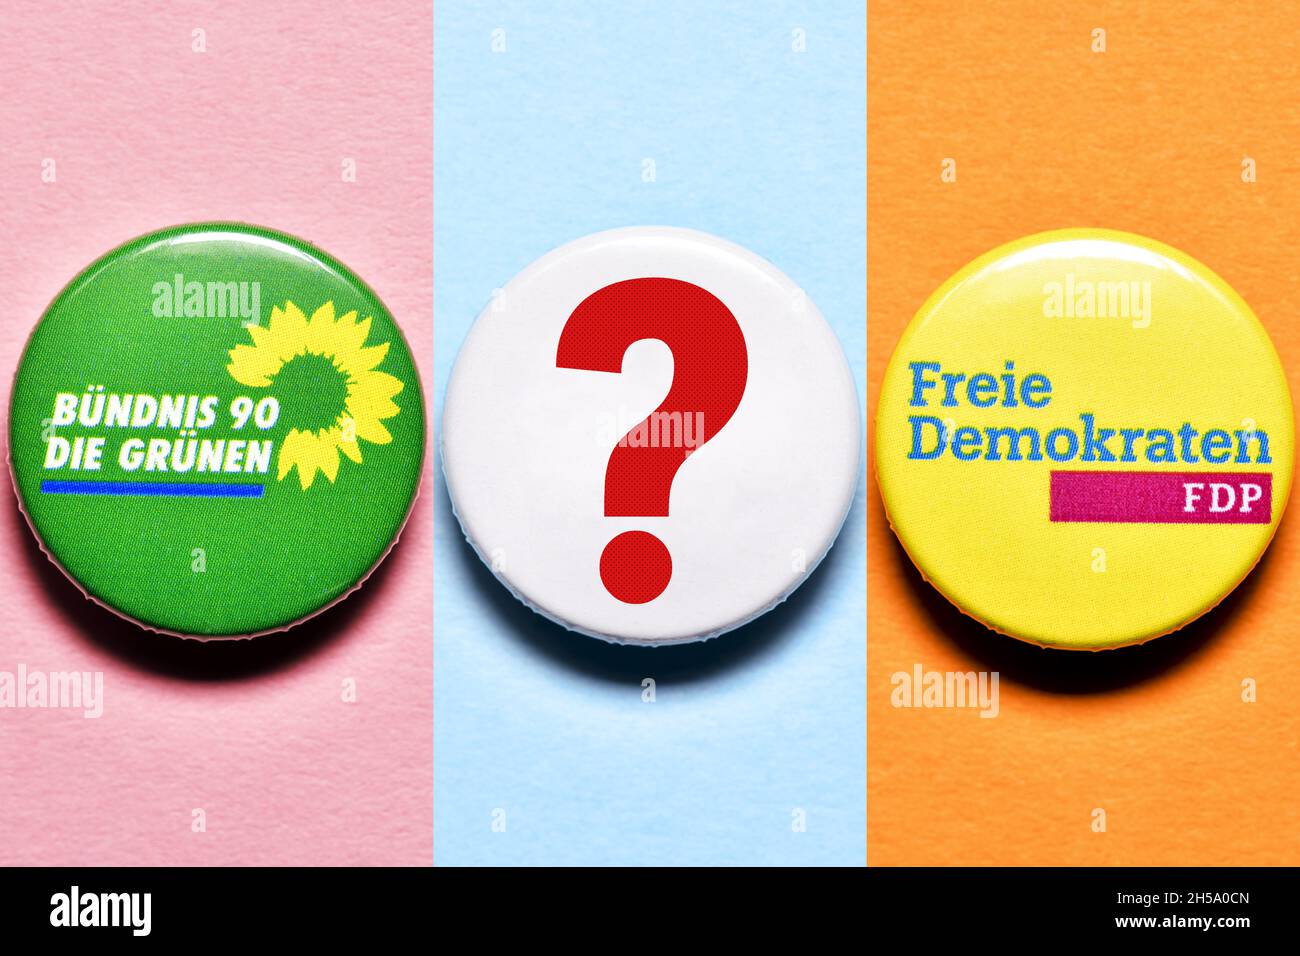 FDP und den Grünen mit Fragezeichen, Symbolfoto Koalitionsverhandlungen Banque D'Images